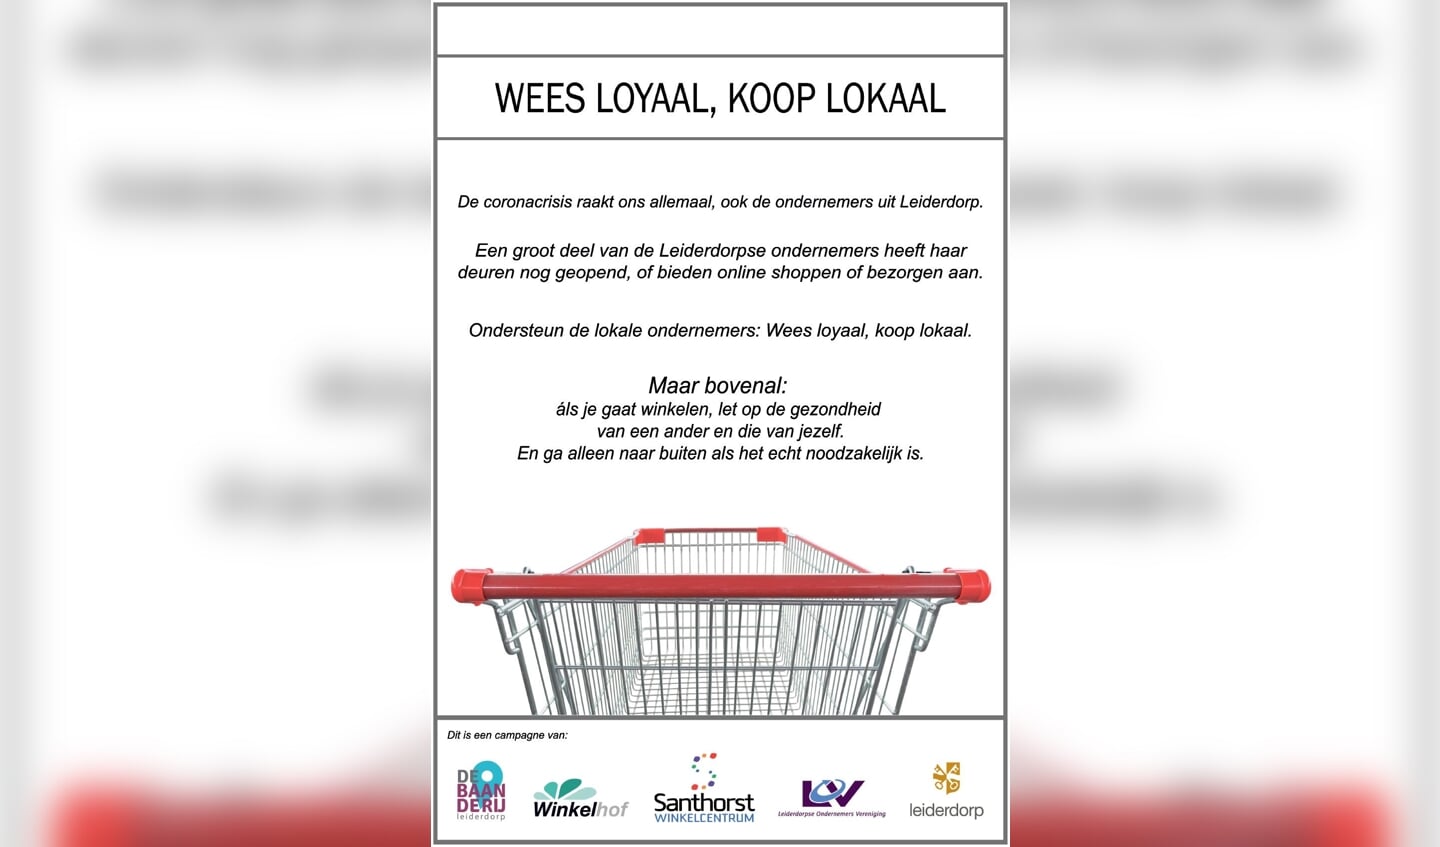 Woensdag verscheen in het Leiderdorps Weekblad ook deze advertentie van verschillende winkelgebieden, de LOV en de gemeente Leiderdorp waarin Leiderdorpers wordt opgeroepen hun inkopen  in eigen dorp te doen.